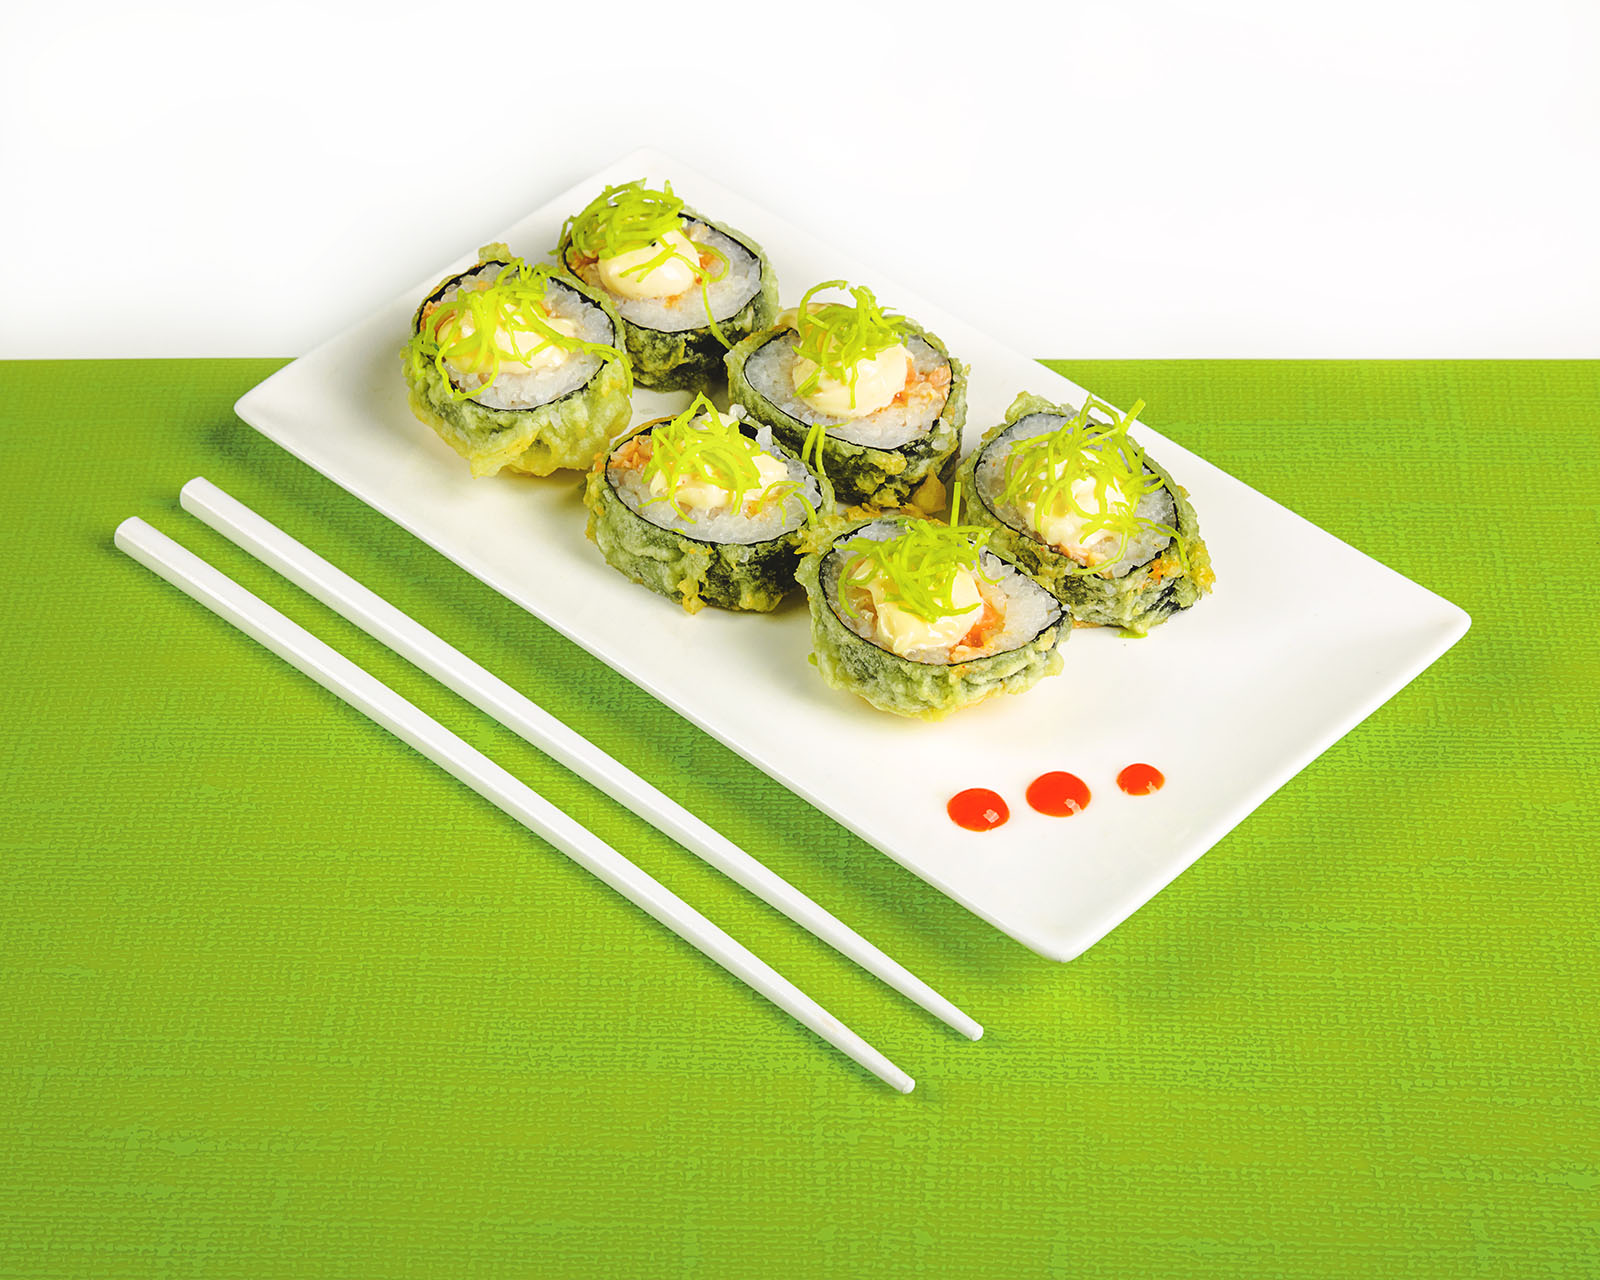 zdjęcia jedzenia, zdjęcia sushi, profesjonalna fotografia kulinarna